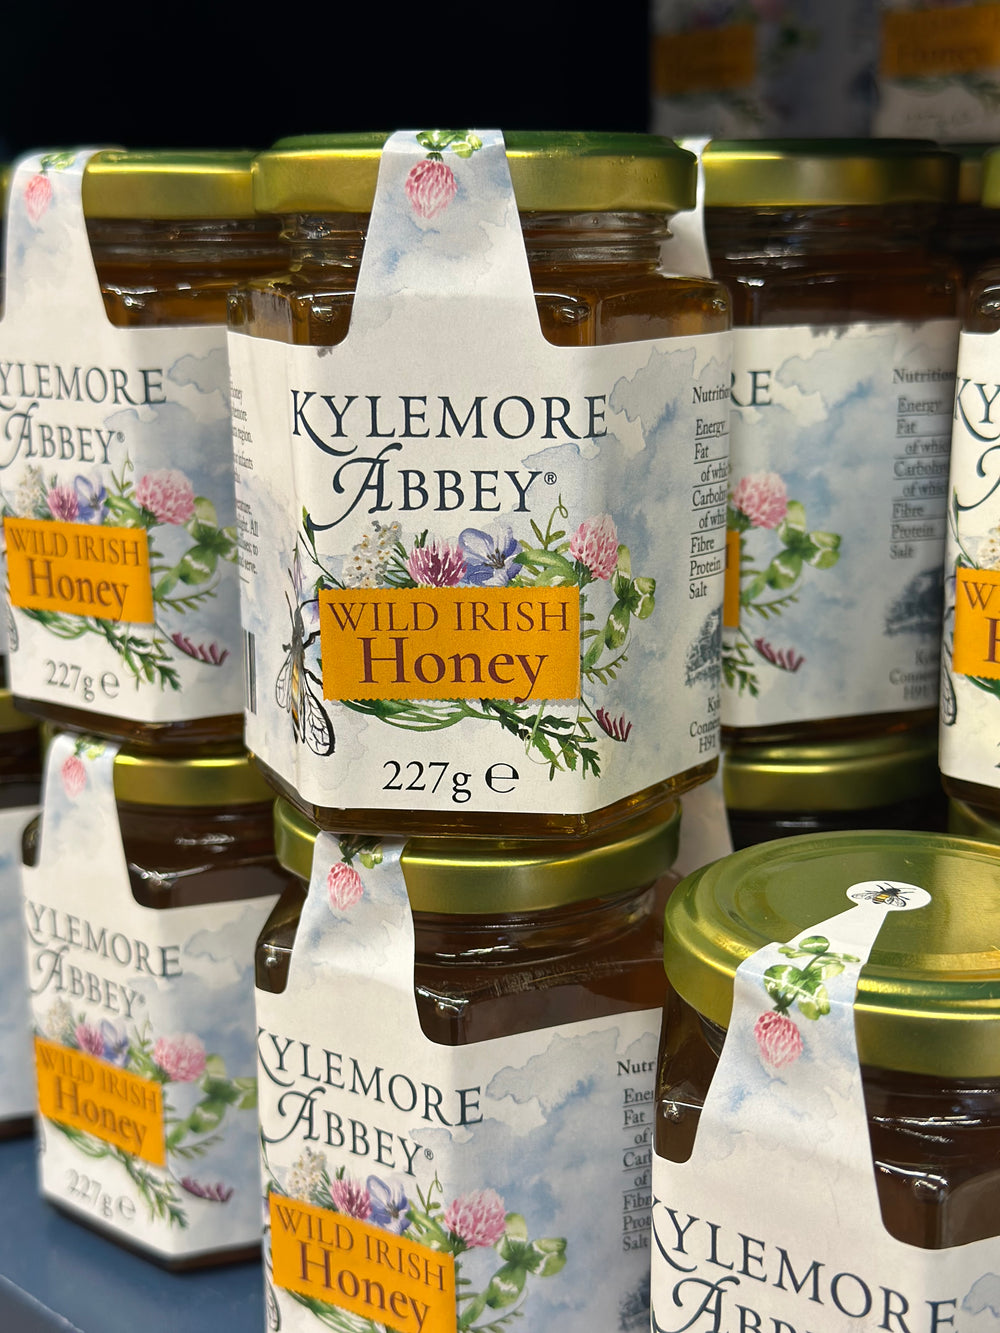 Kylemore Abbey Wild Irish Honey